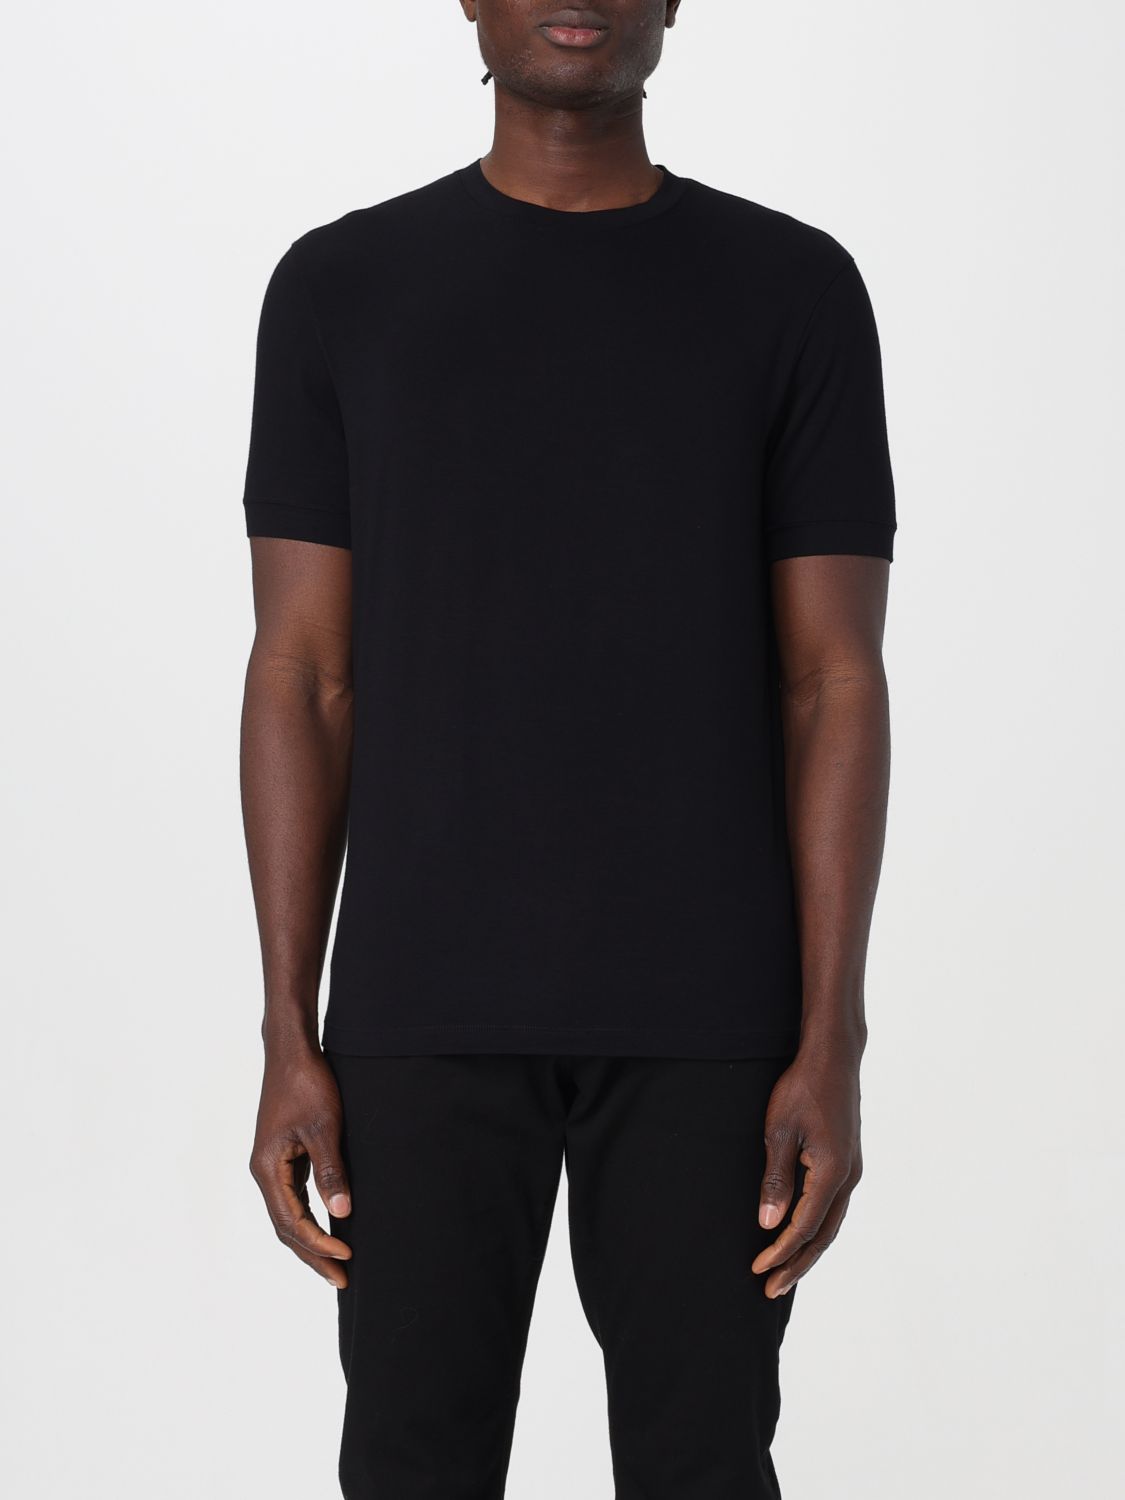 Giorgio Armani T-Shirt GIORGIO ARMANI Men color Black